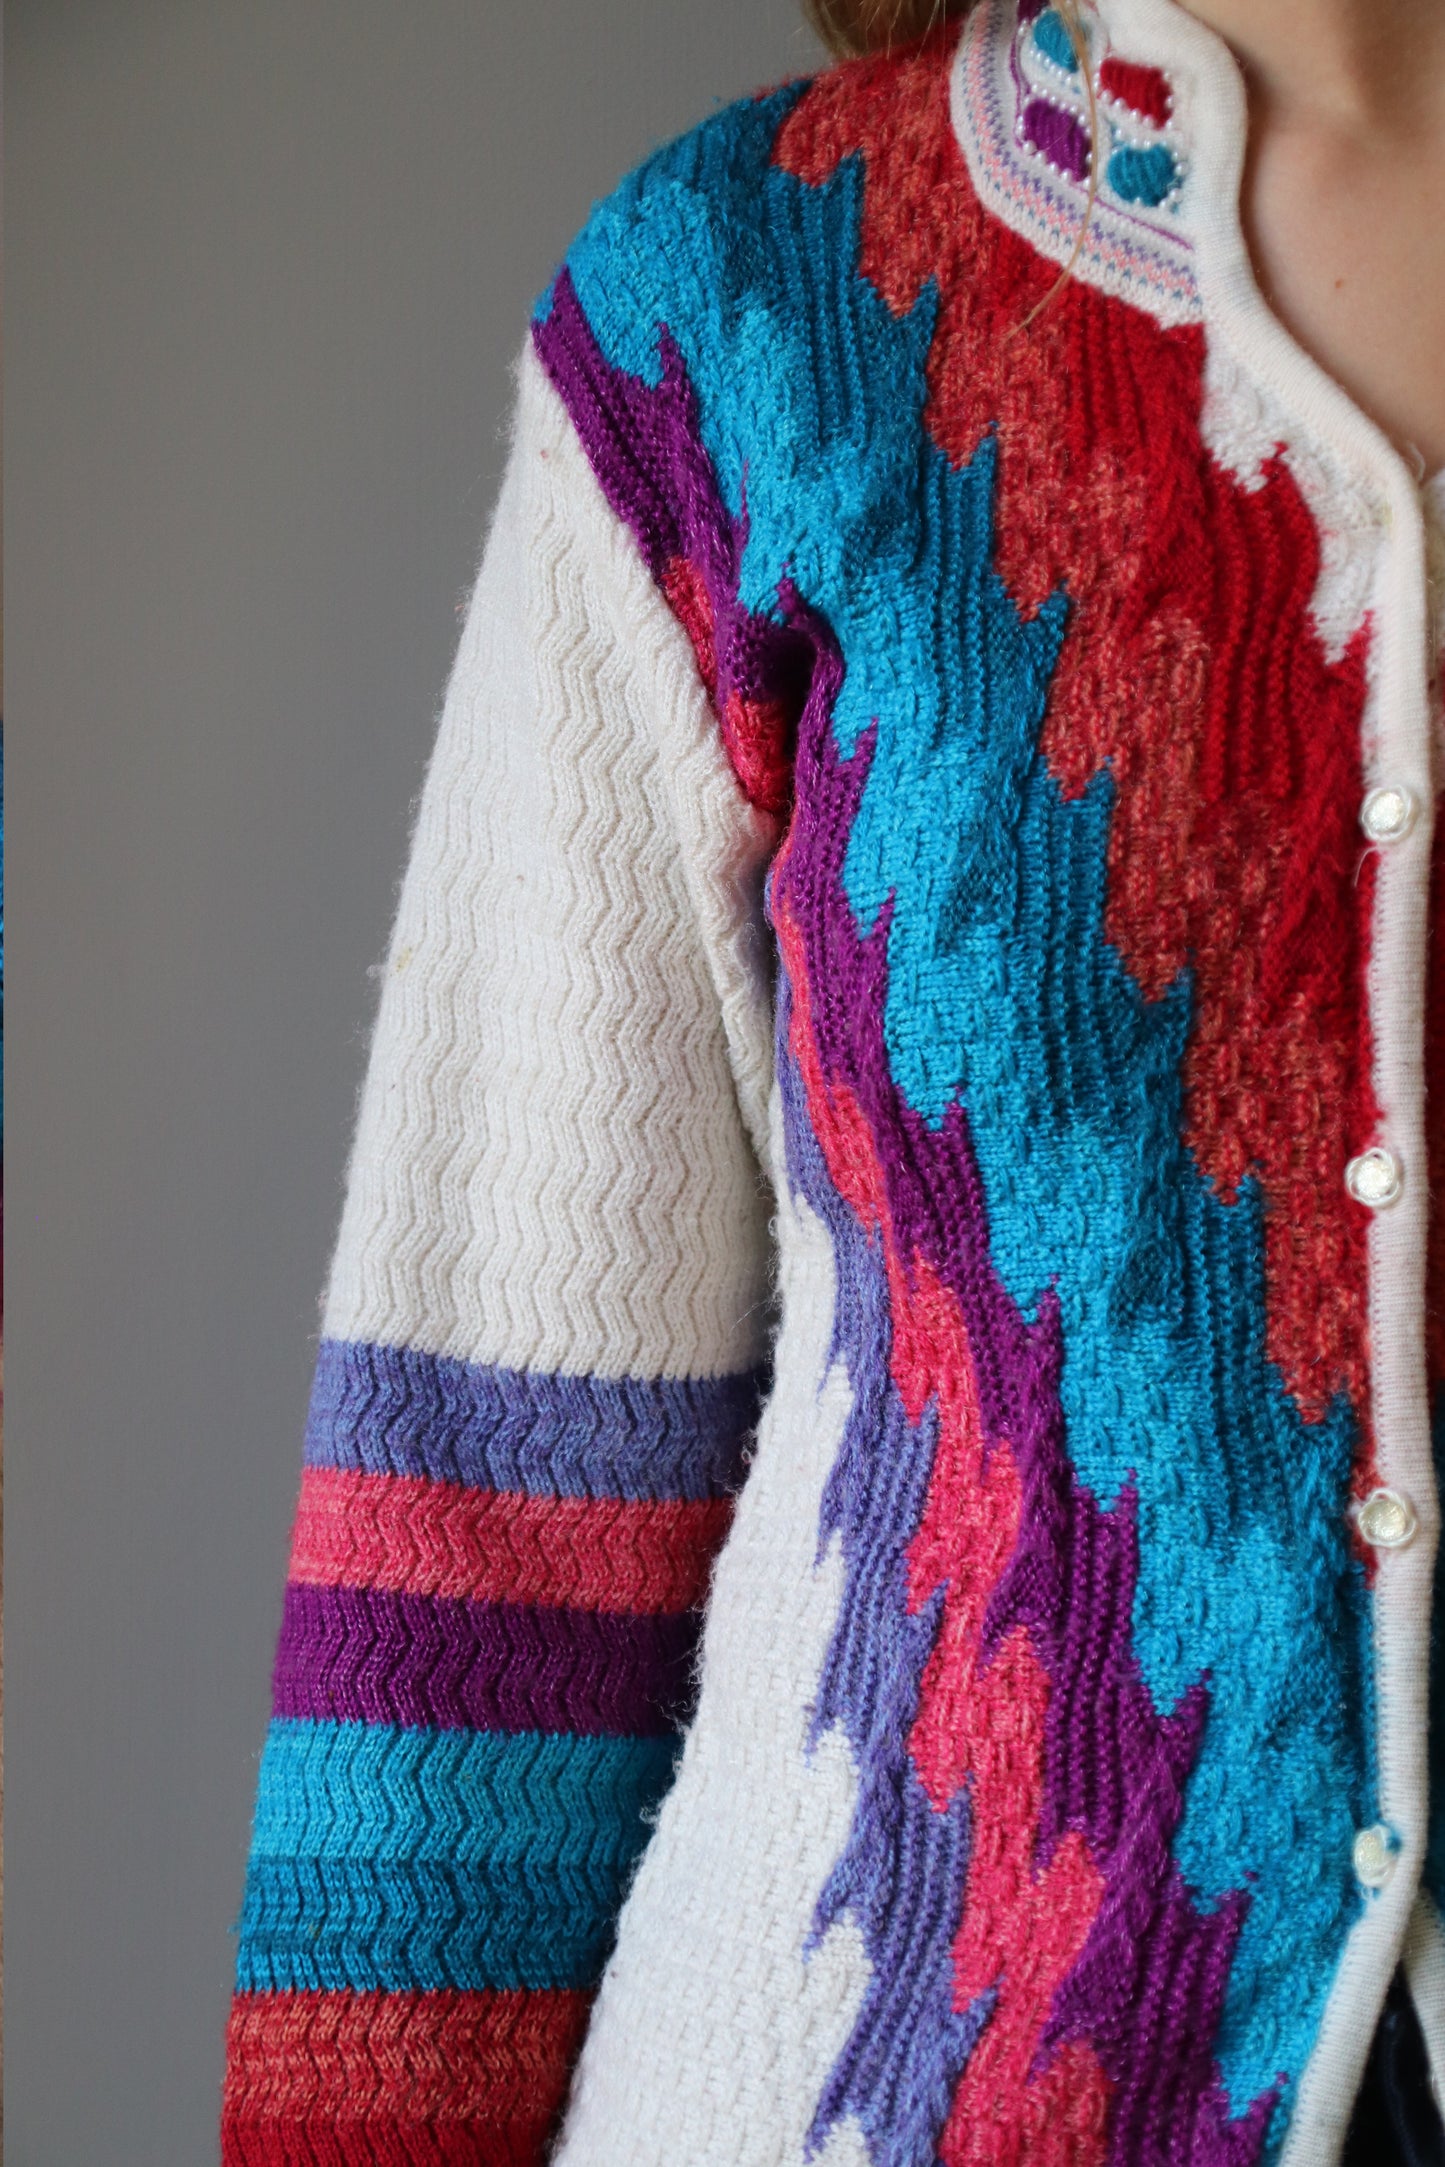 nija colorblock knit - M